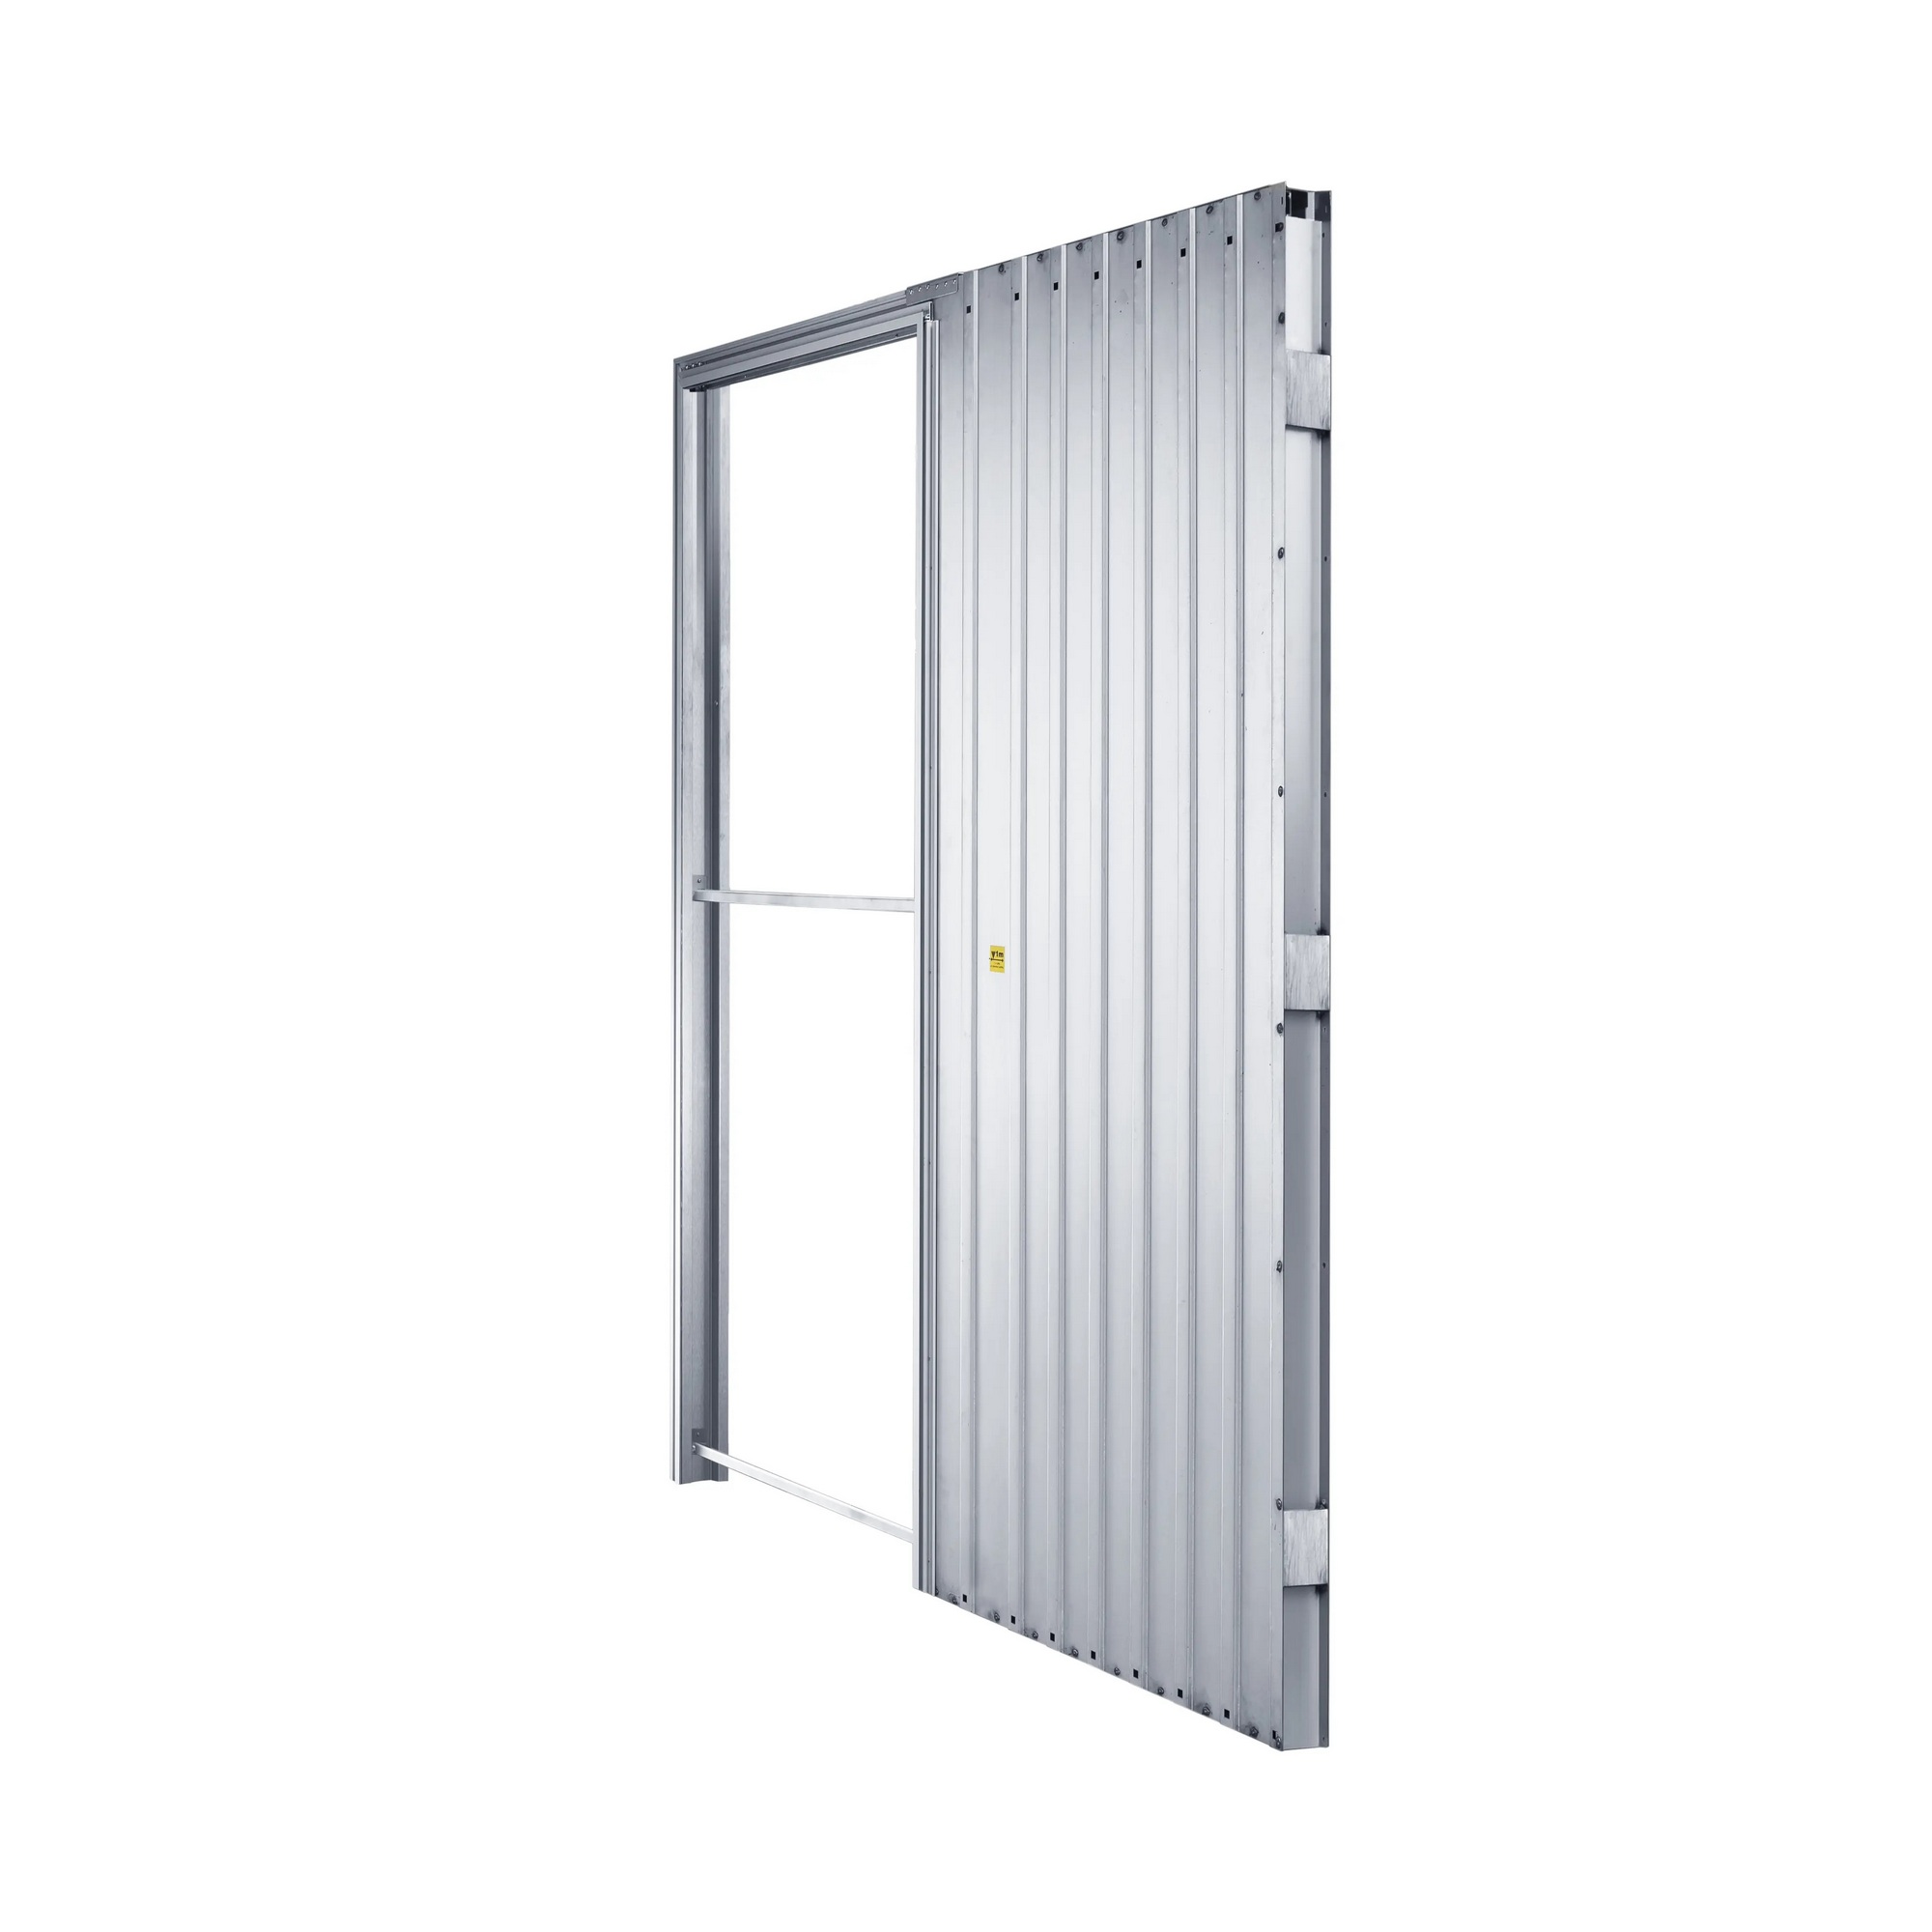 Pouzdro pro posuvné dveře JAP EMOTIVE standard 600 mm do SDK JAP